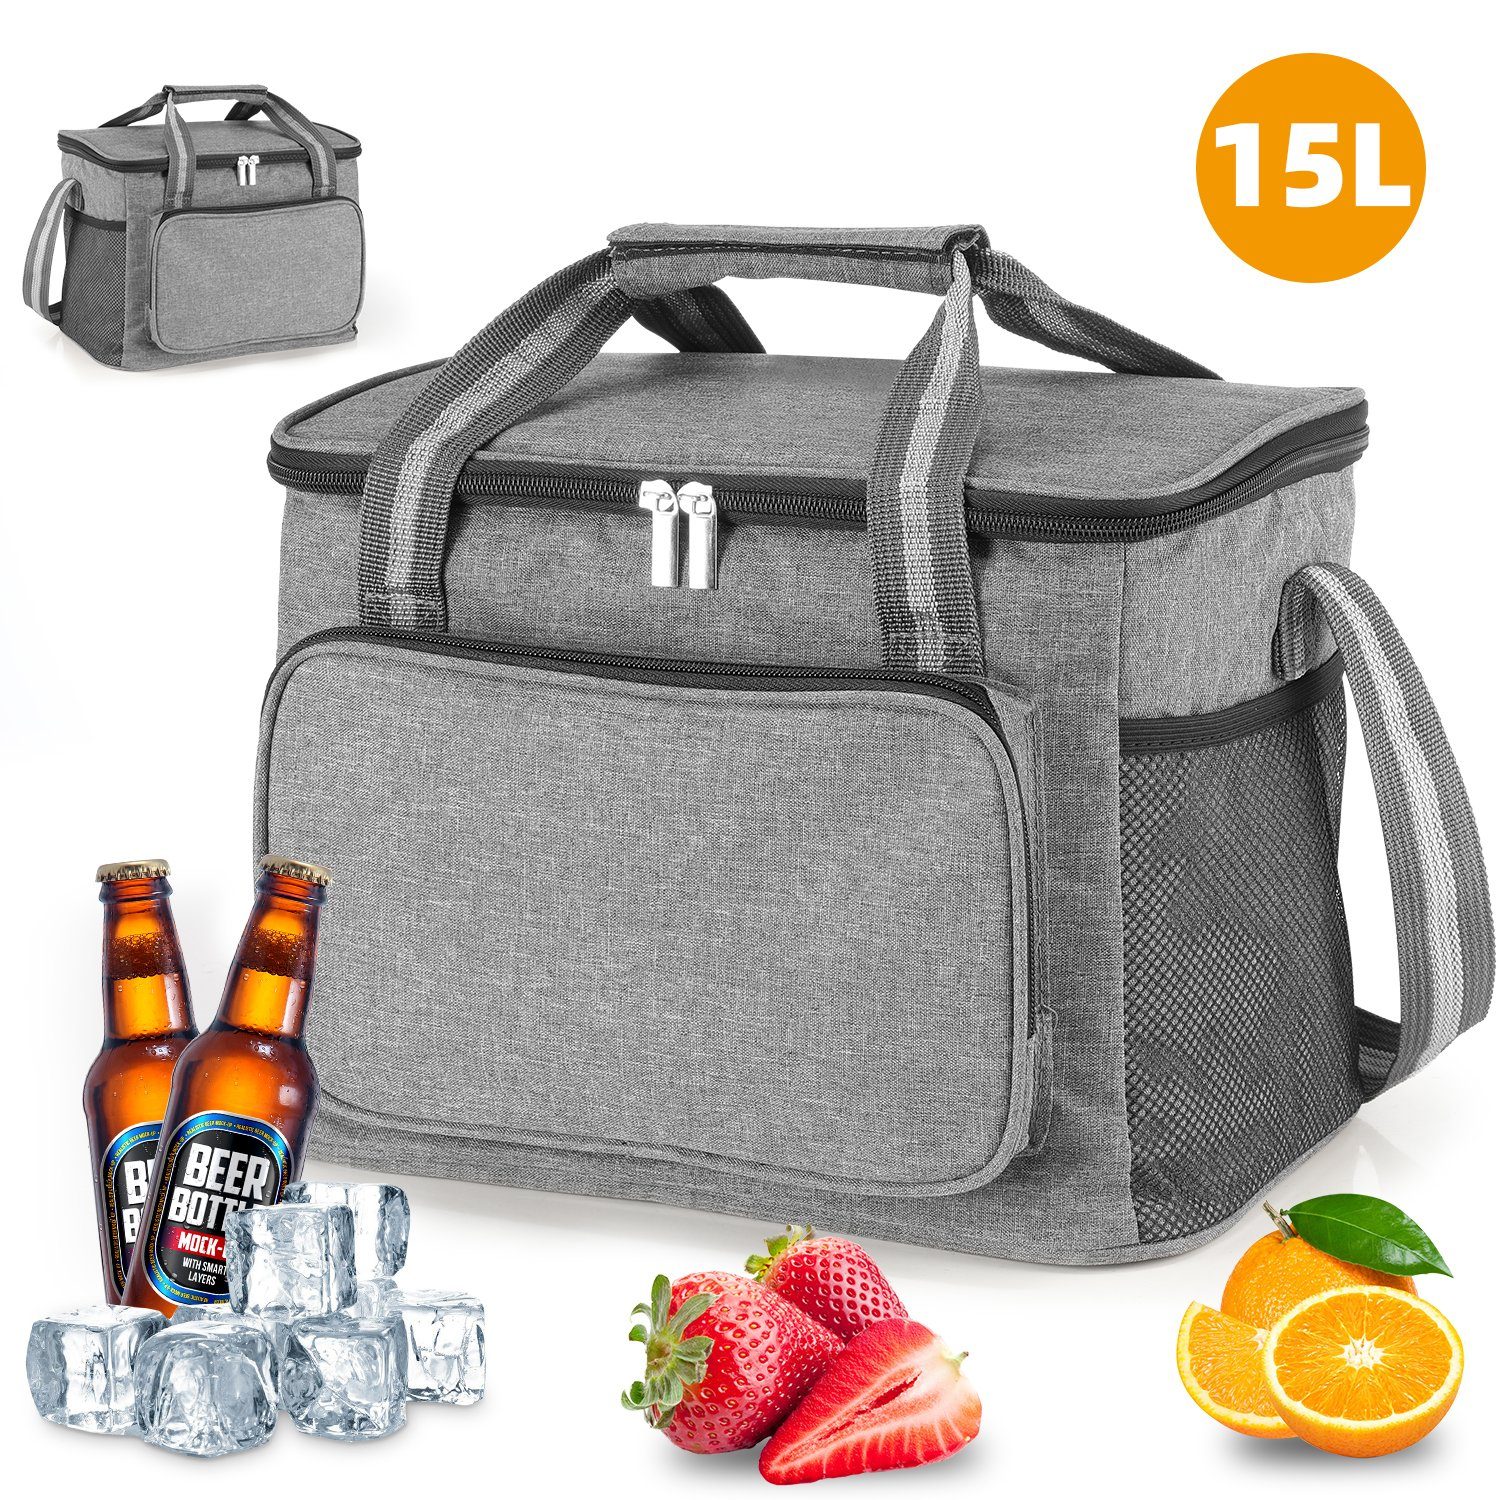 LETGOSPT Picknickkorb Lunchtasche 15L, Faltbar Kühltaschen Thermotasche für Picknick Camping, Kühltasche für Unterwegs/BBQs/Ausflügen/Einkaufen/Auto, Hellgrau